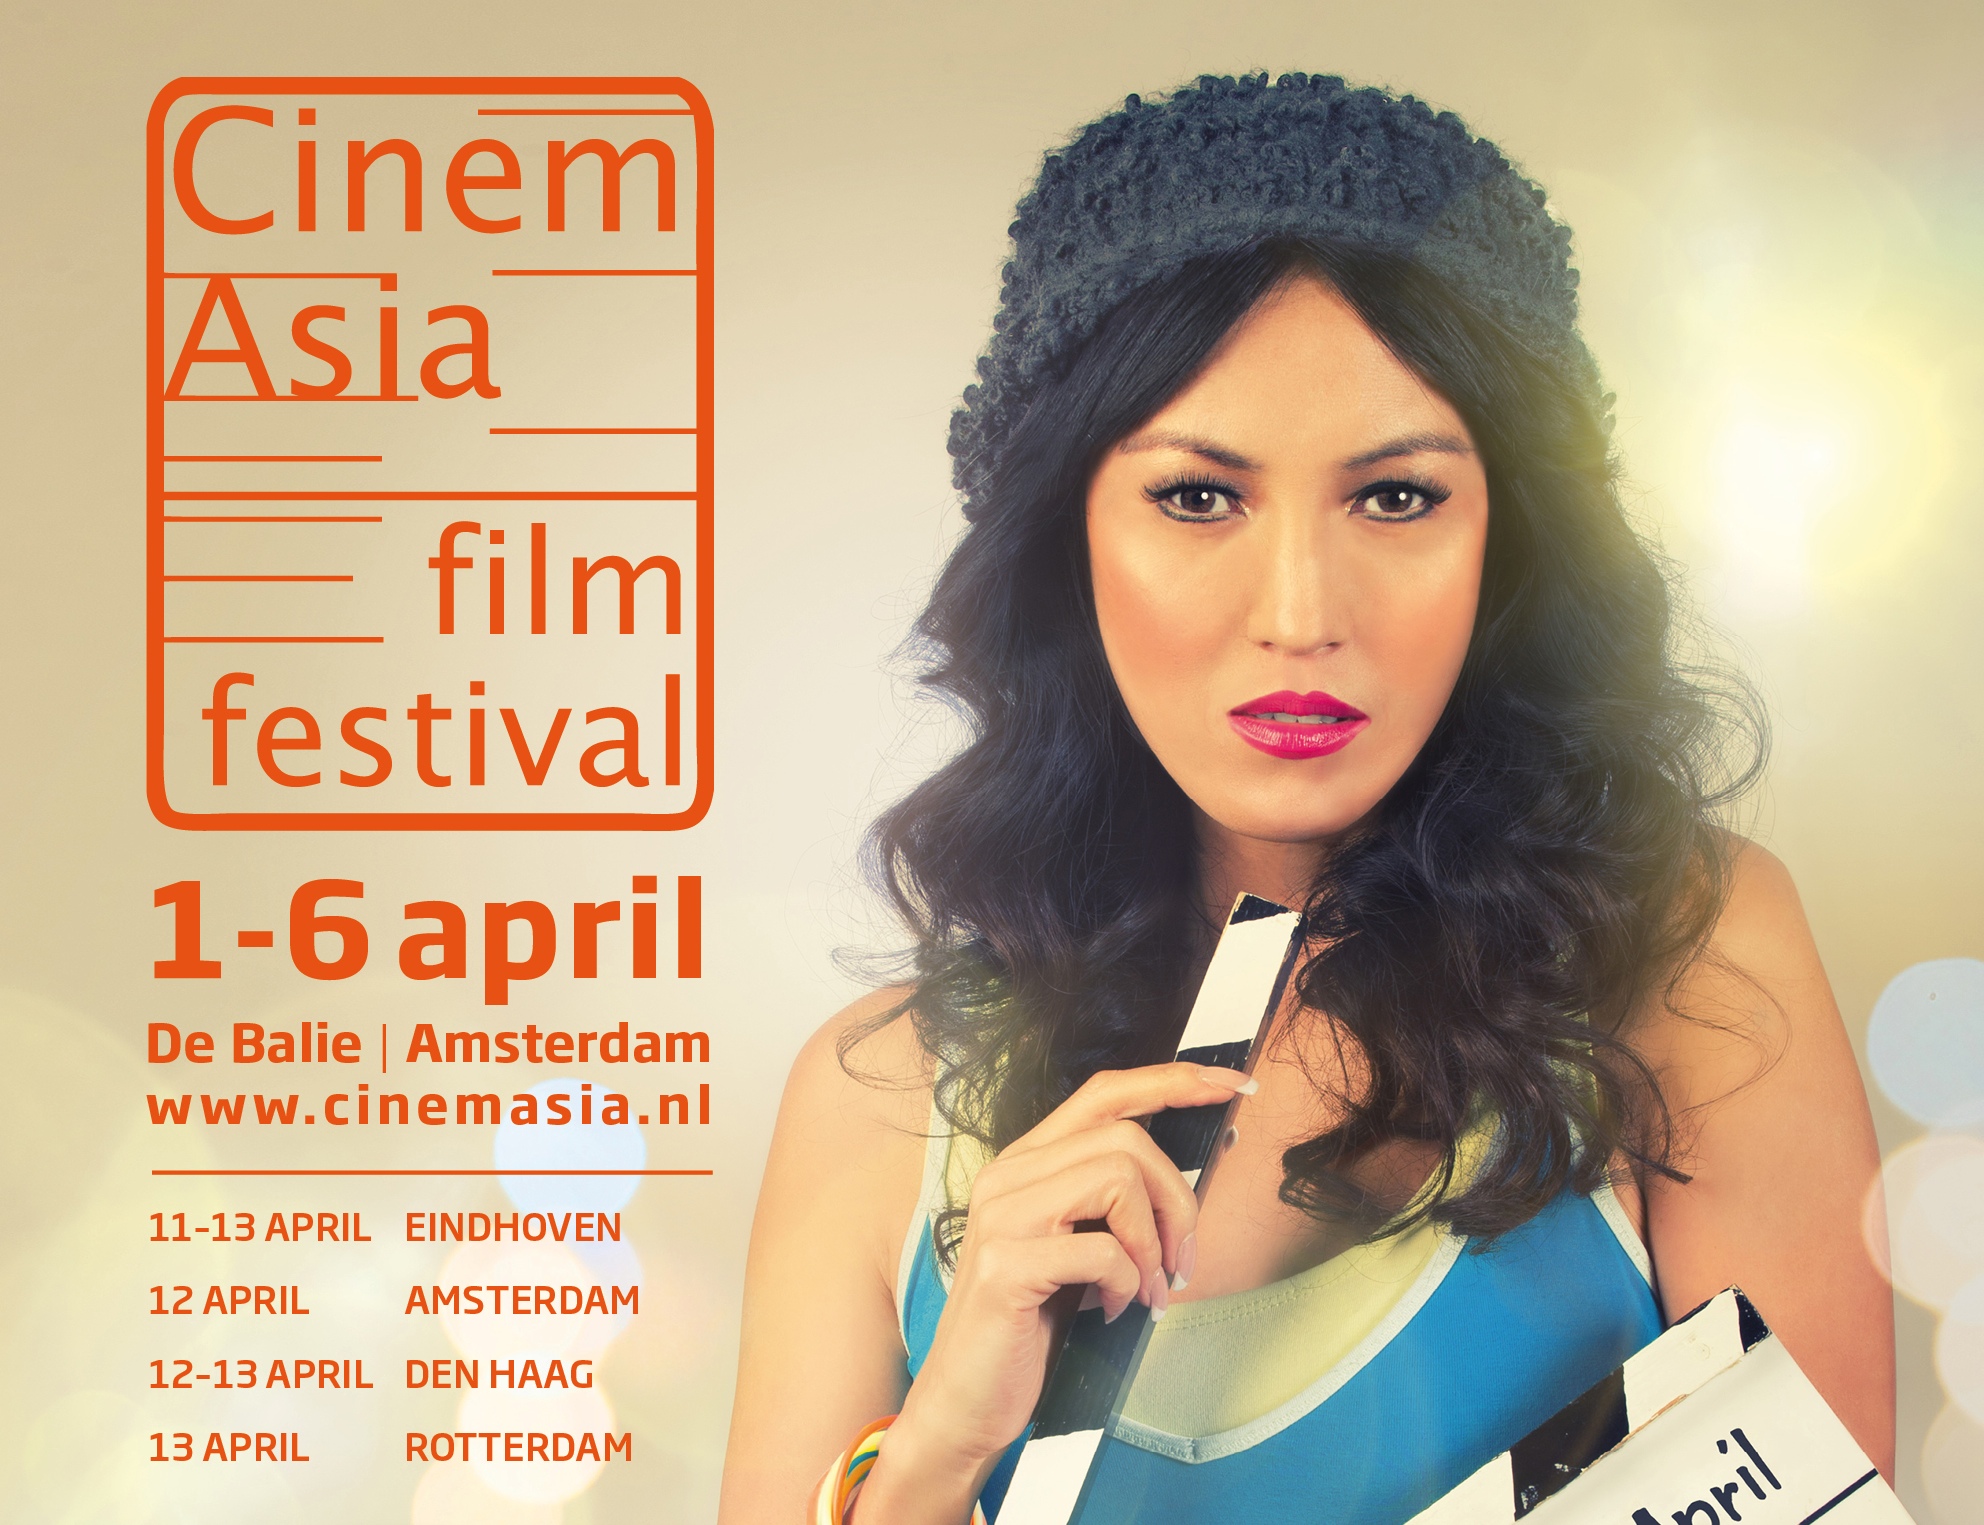 Indisch 3.0 CinemAsia actie 2014: deel je film met twee vrienden